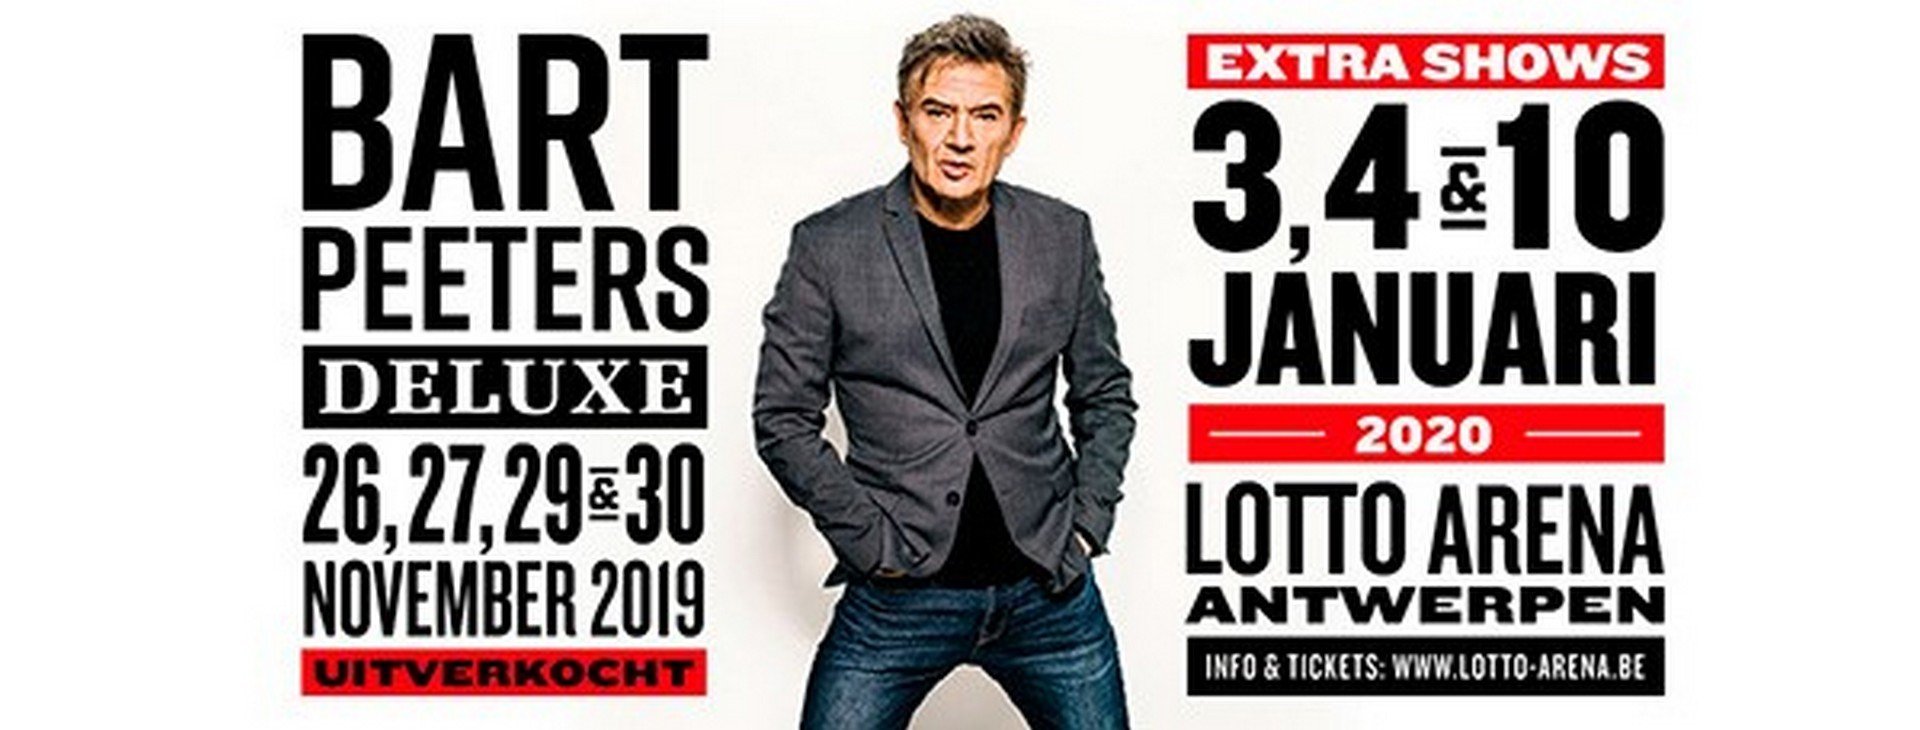 Extra Lotto Arena voor Bart Peeters De Luxe - Bart Peeters 4